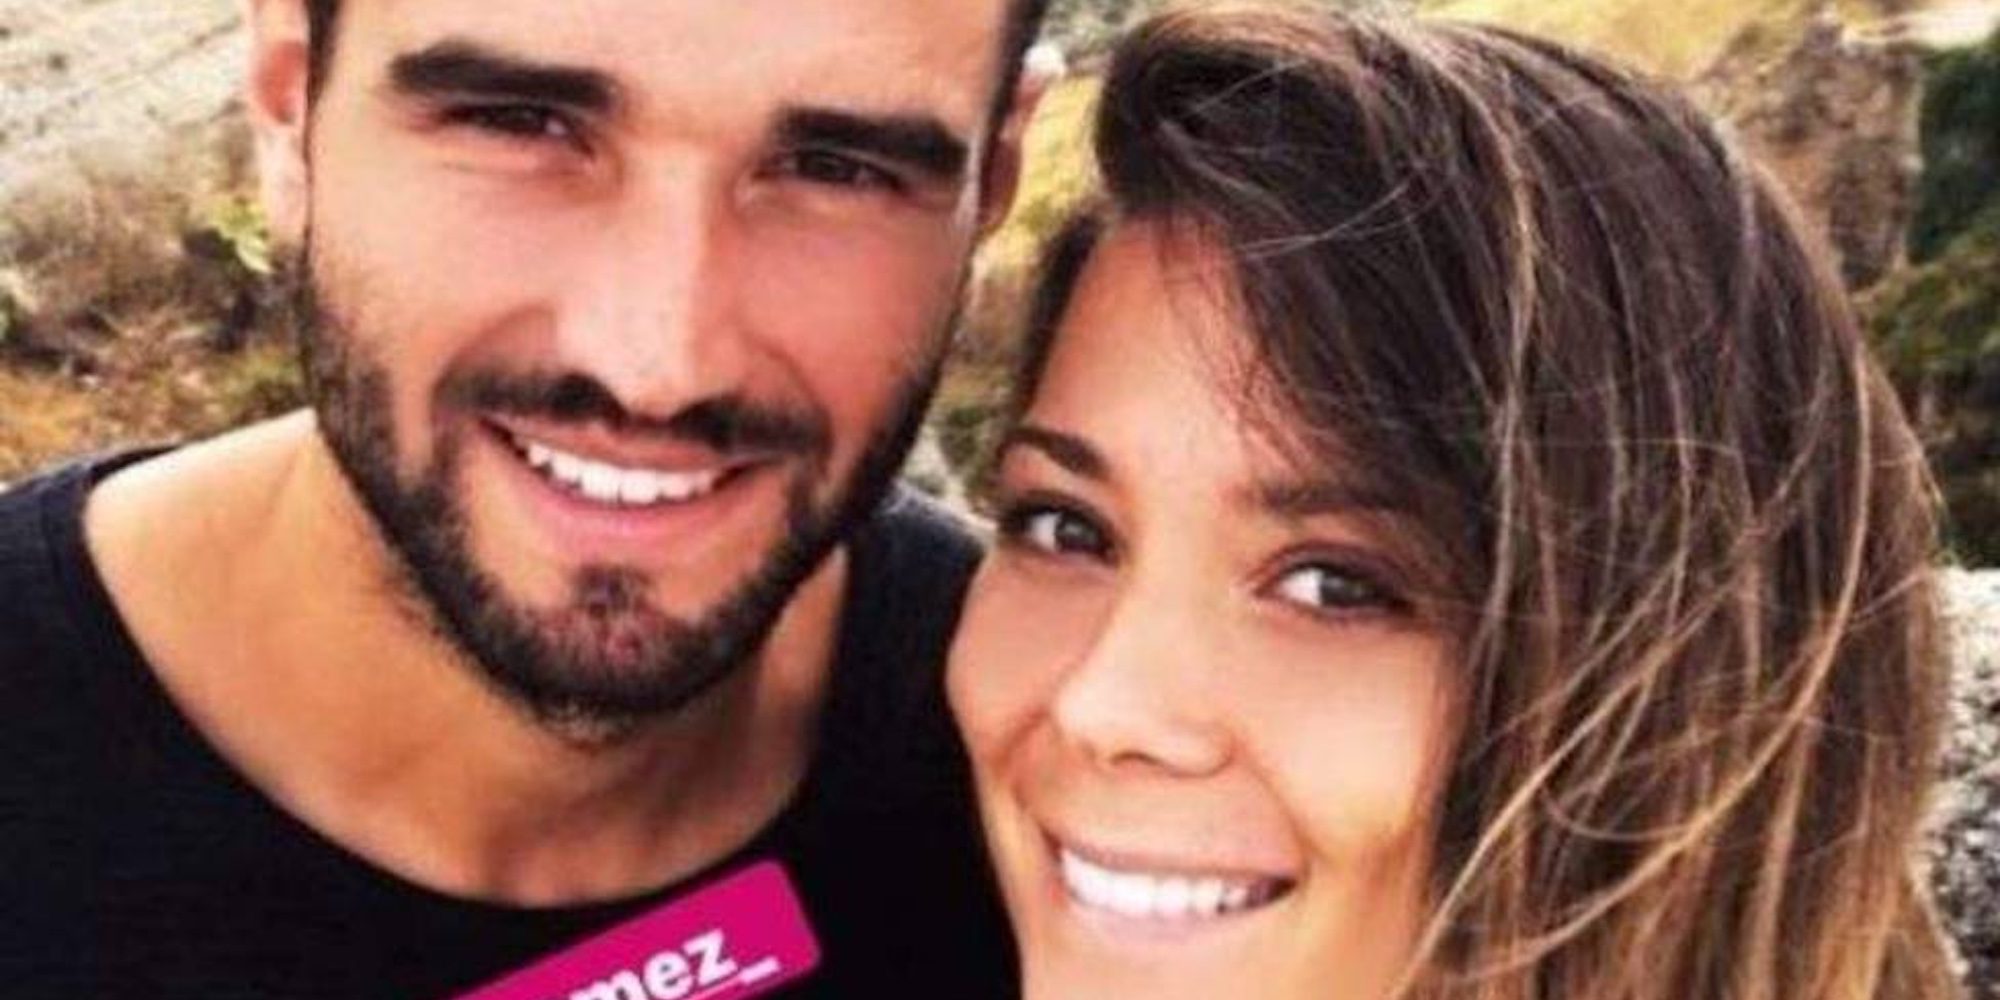 Lorena Gómez y Antonio Barragán confirman su relación con una tierna fotografía